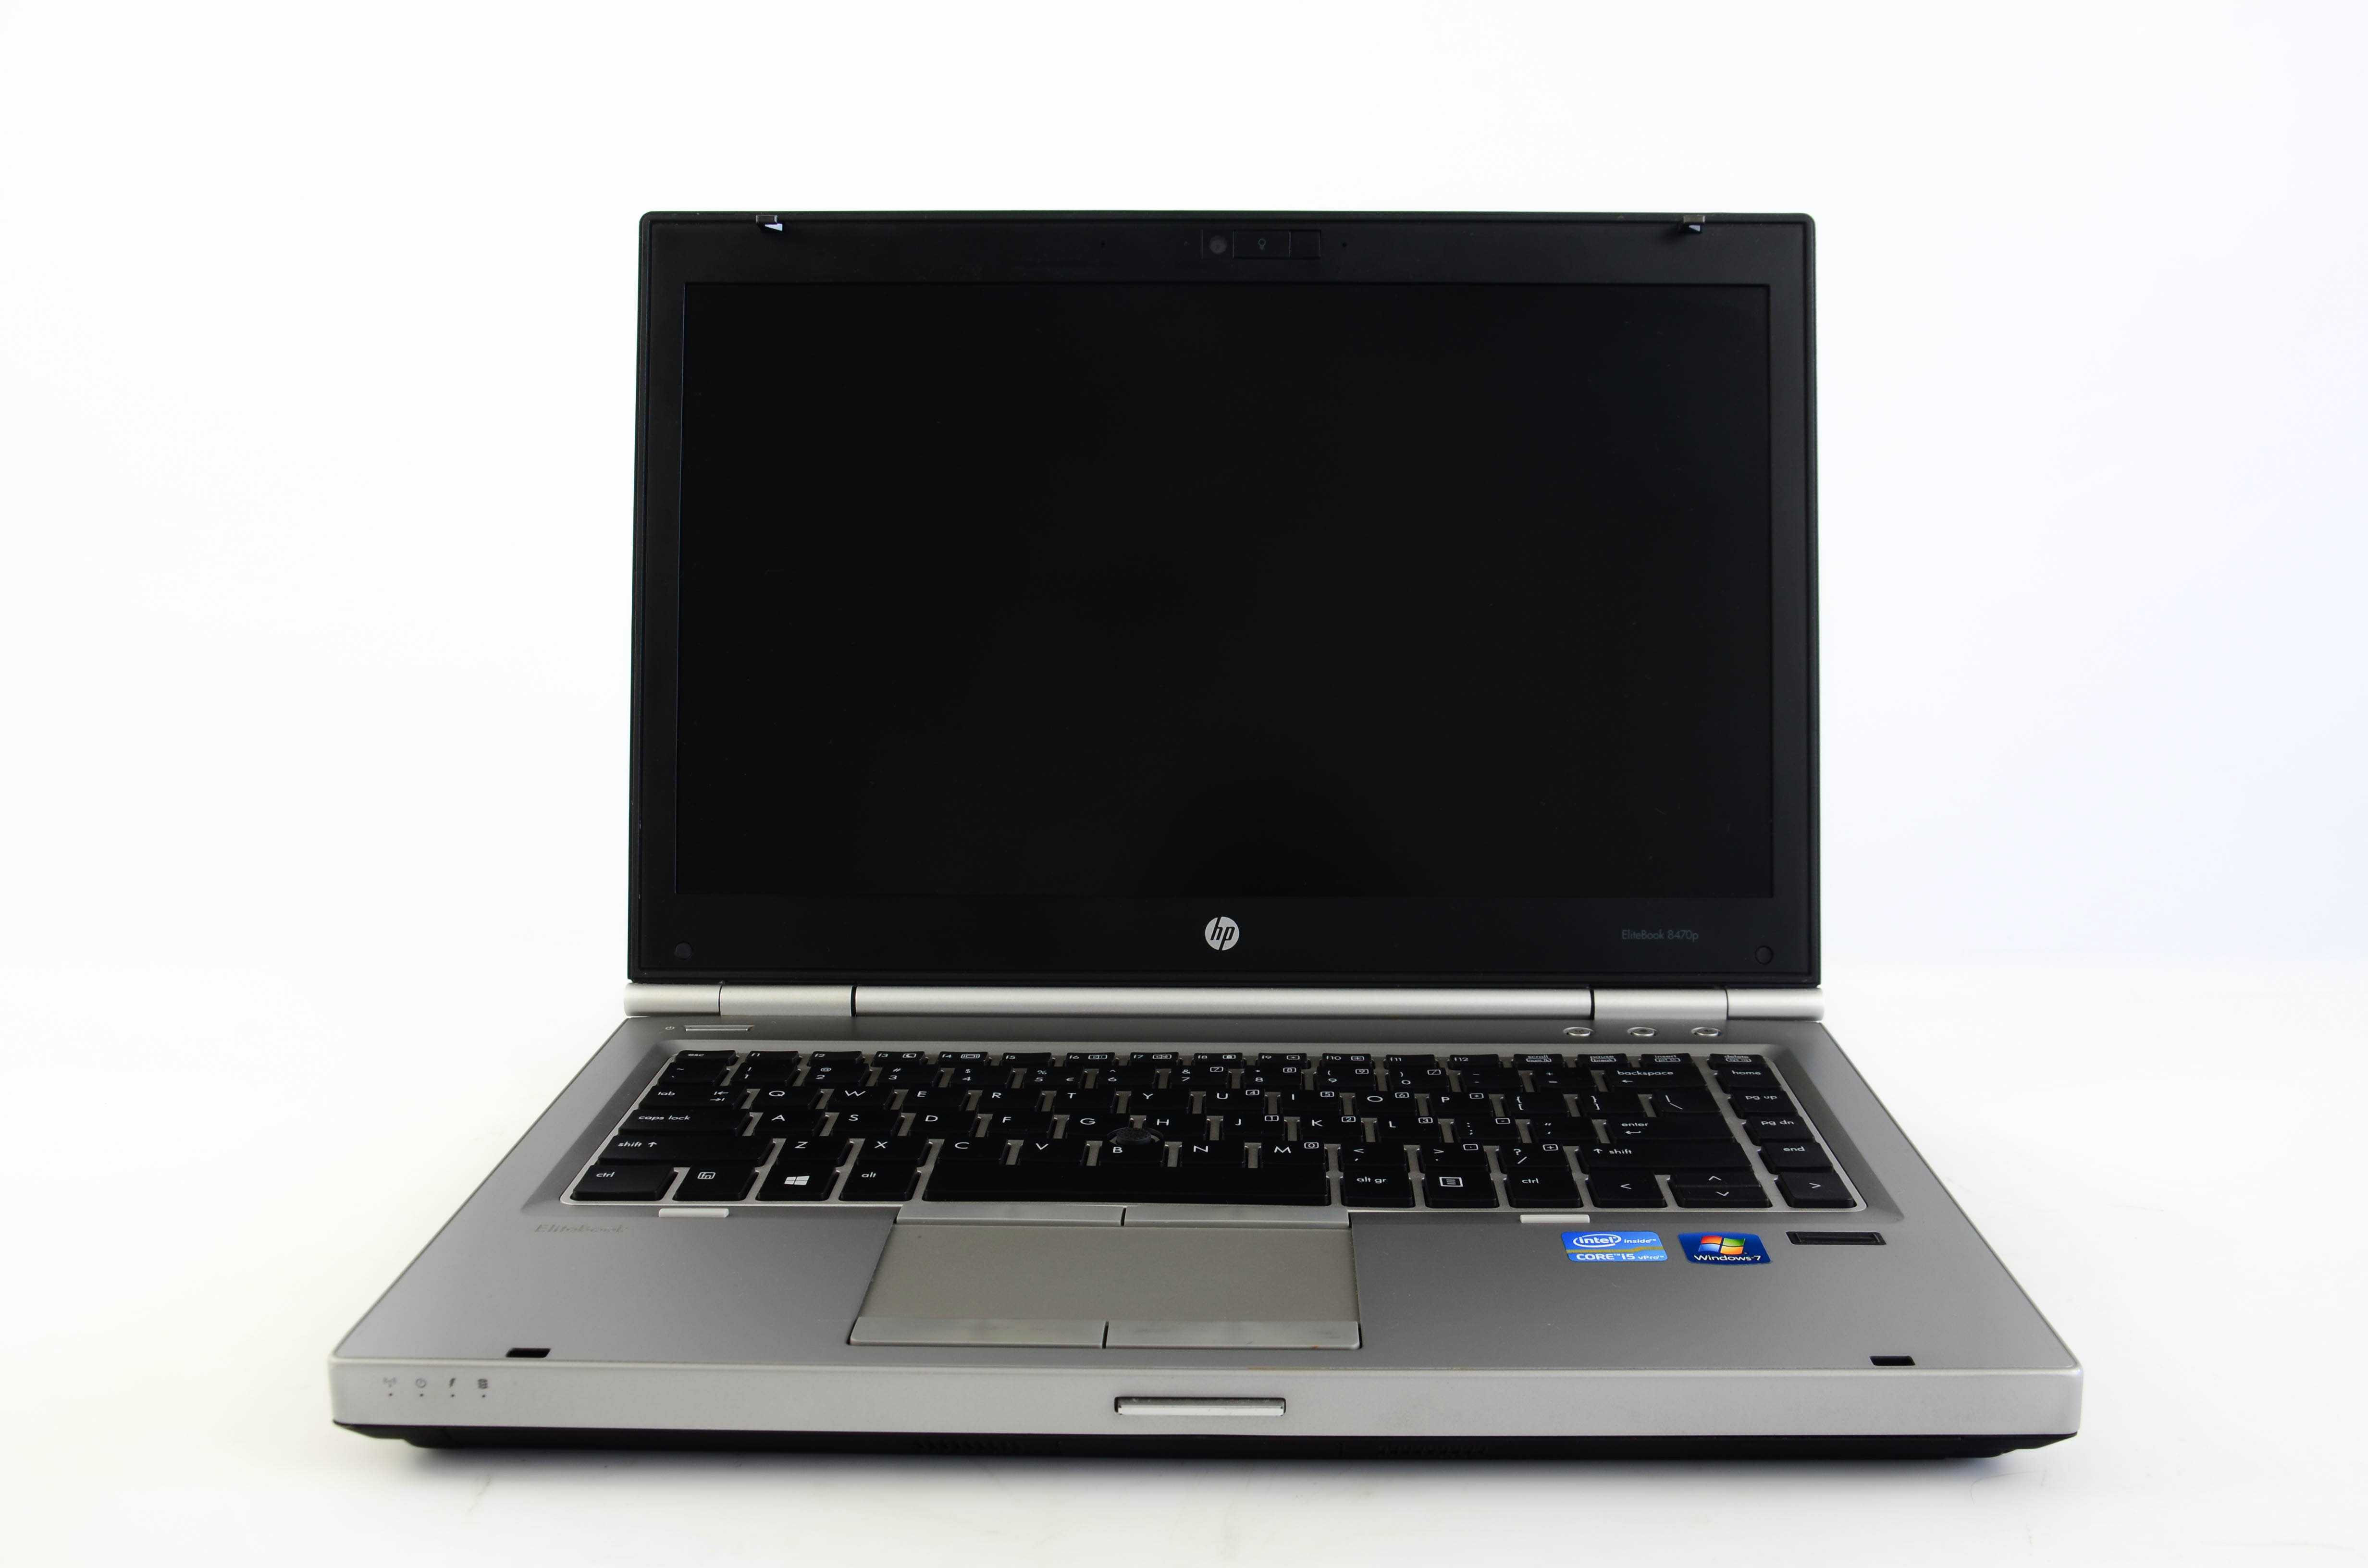 Ноутбук hp elitebook 8470p — купить, цена и характеристики, отзывы